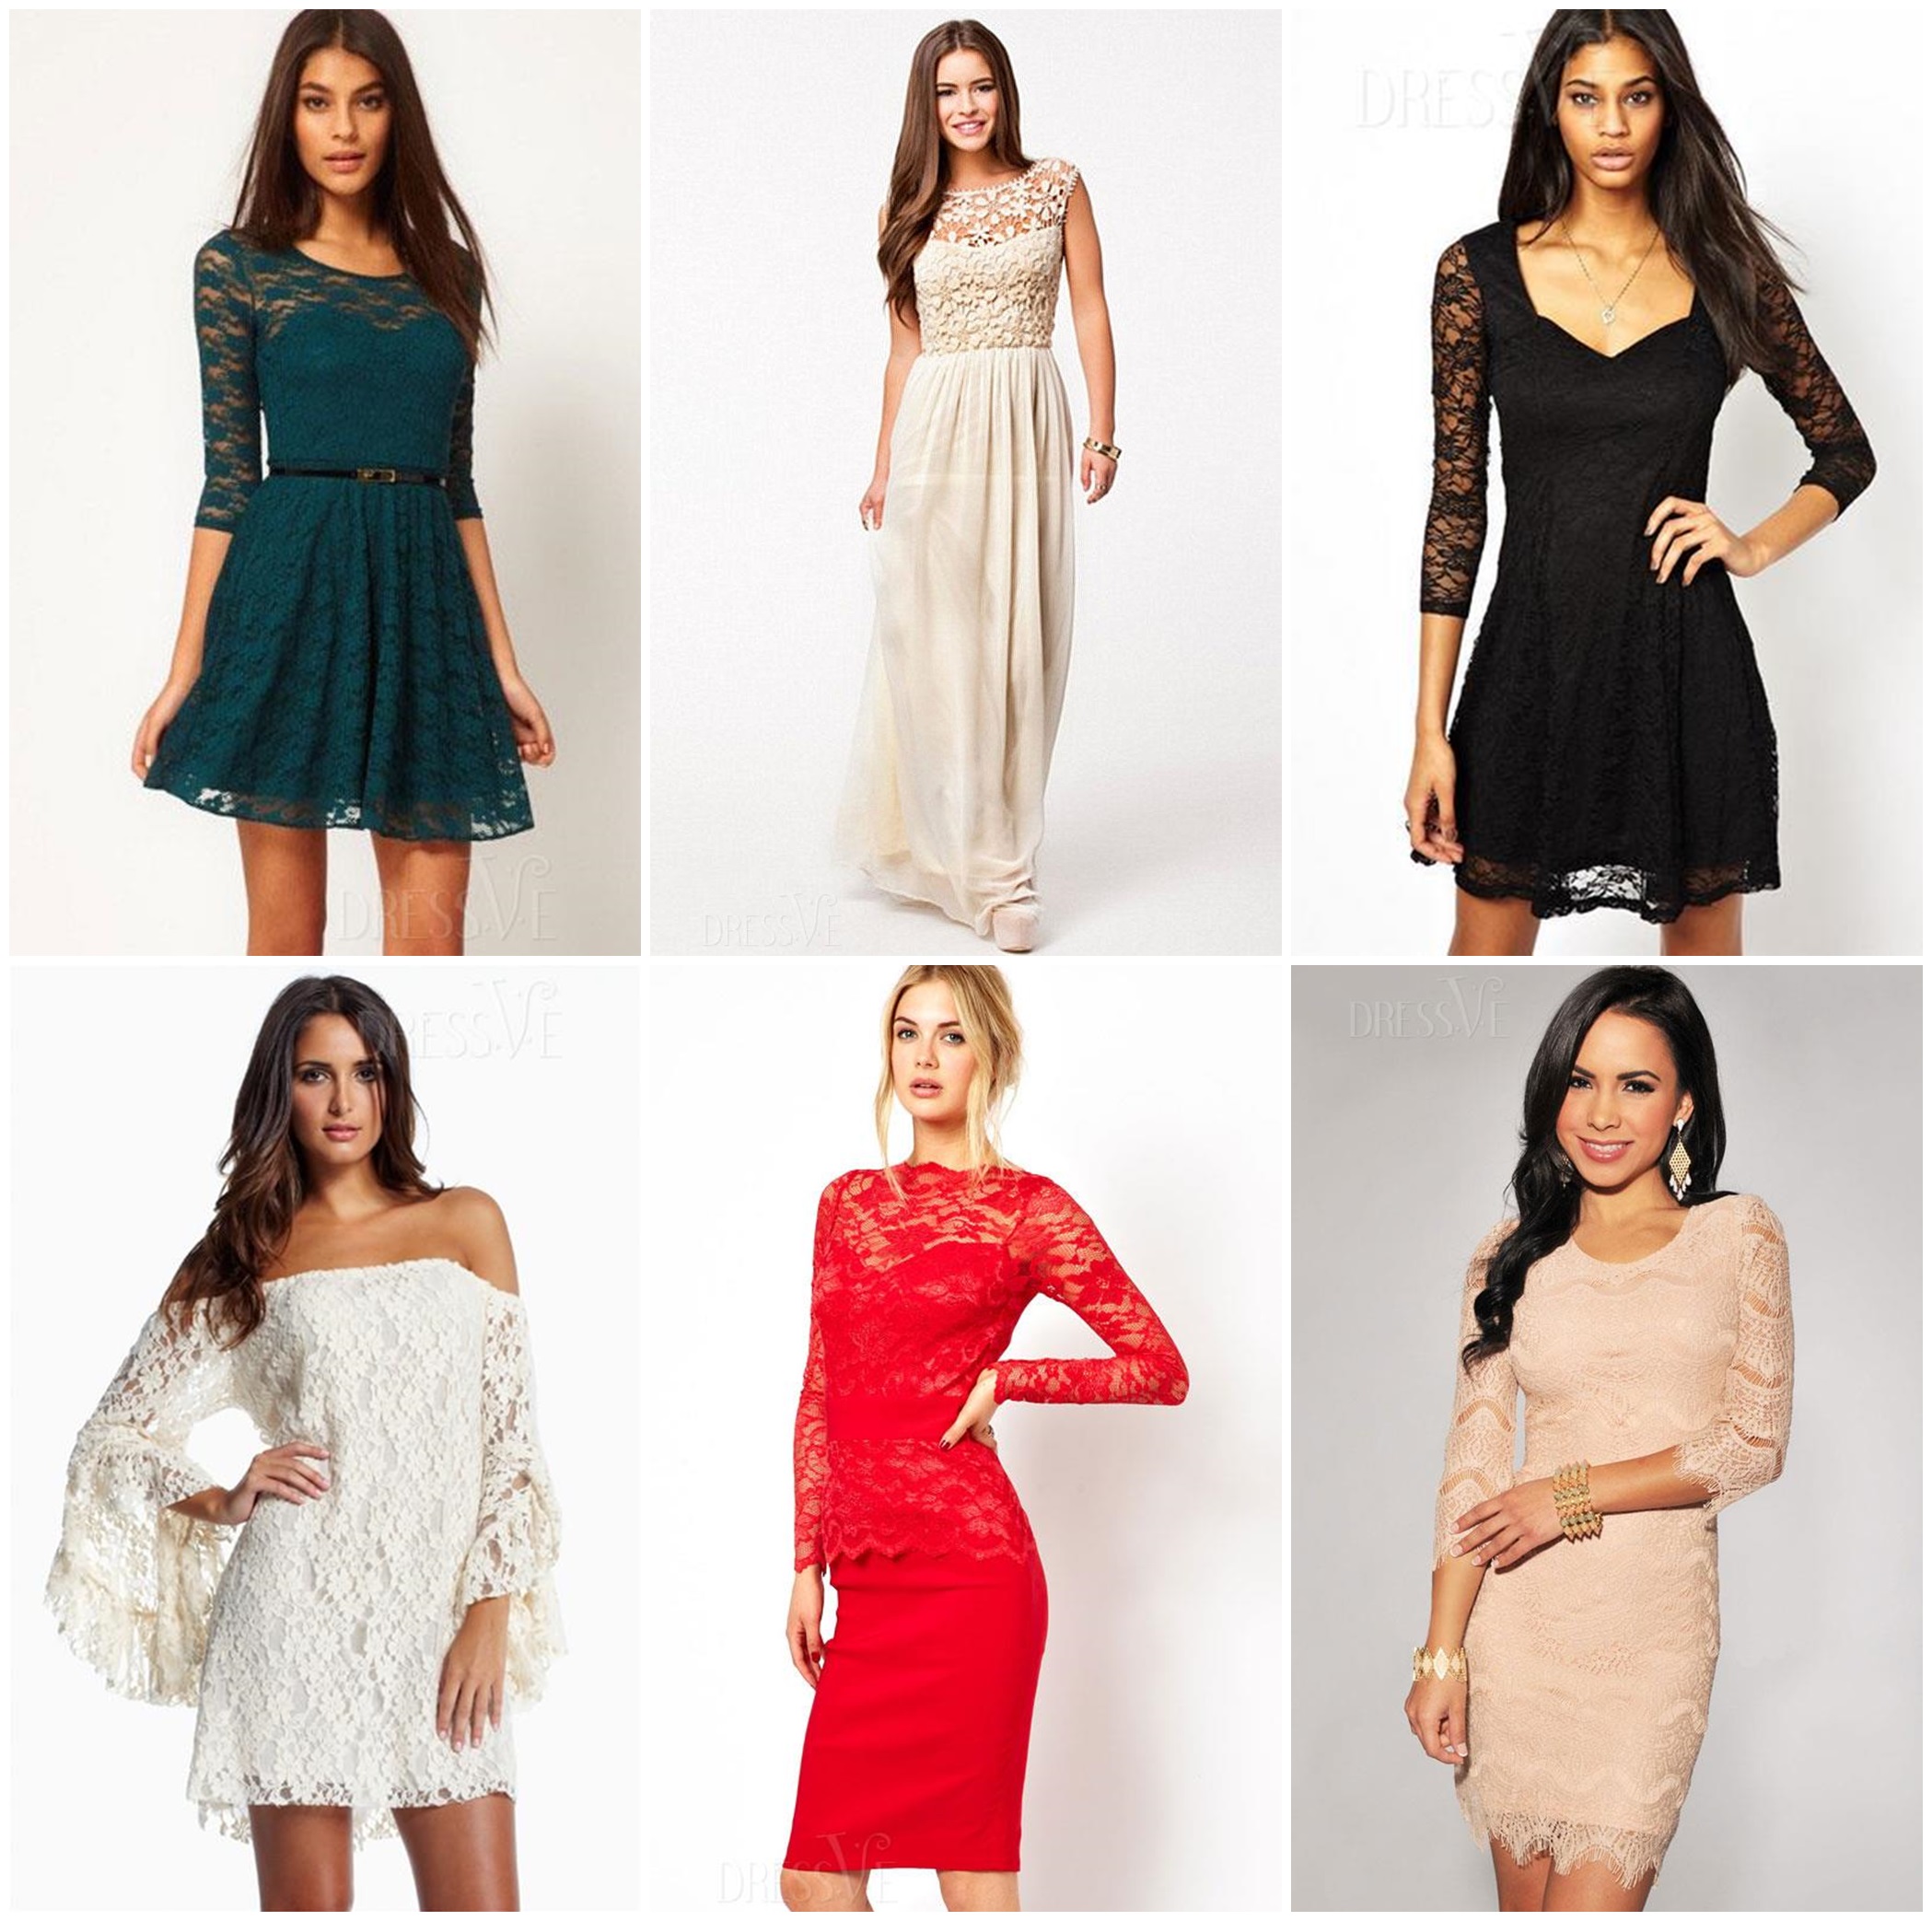 dressve-lace-dresses-shop-online-1